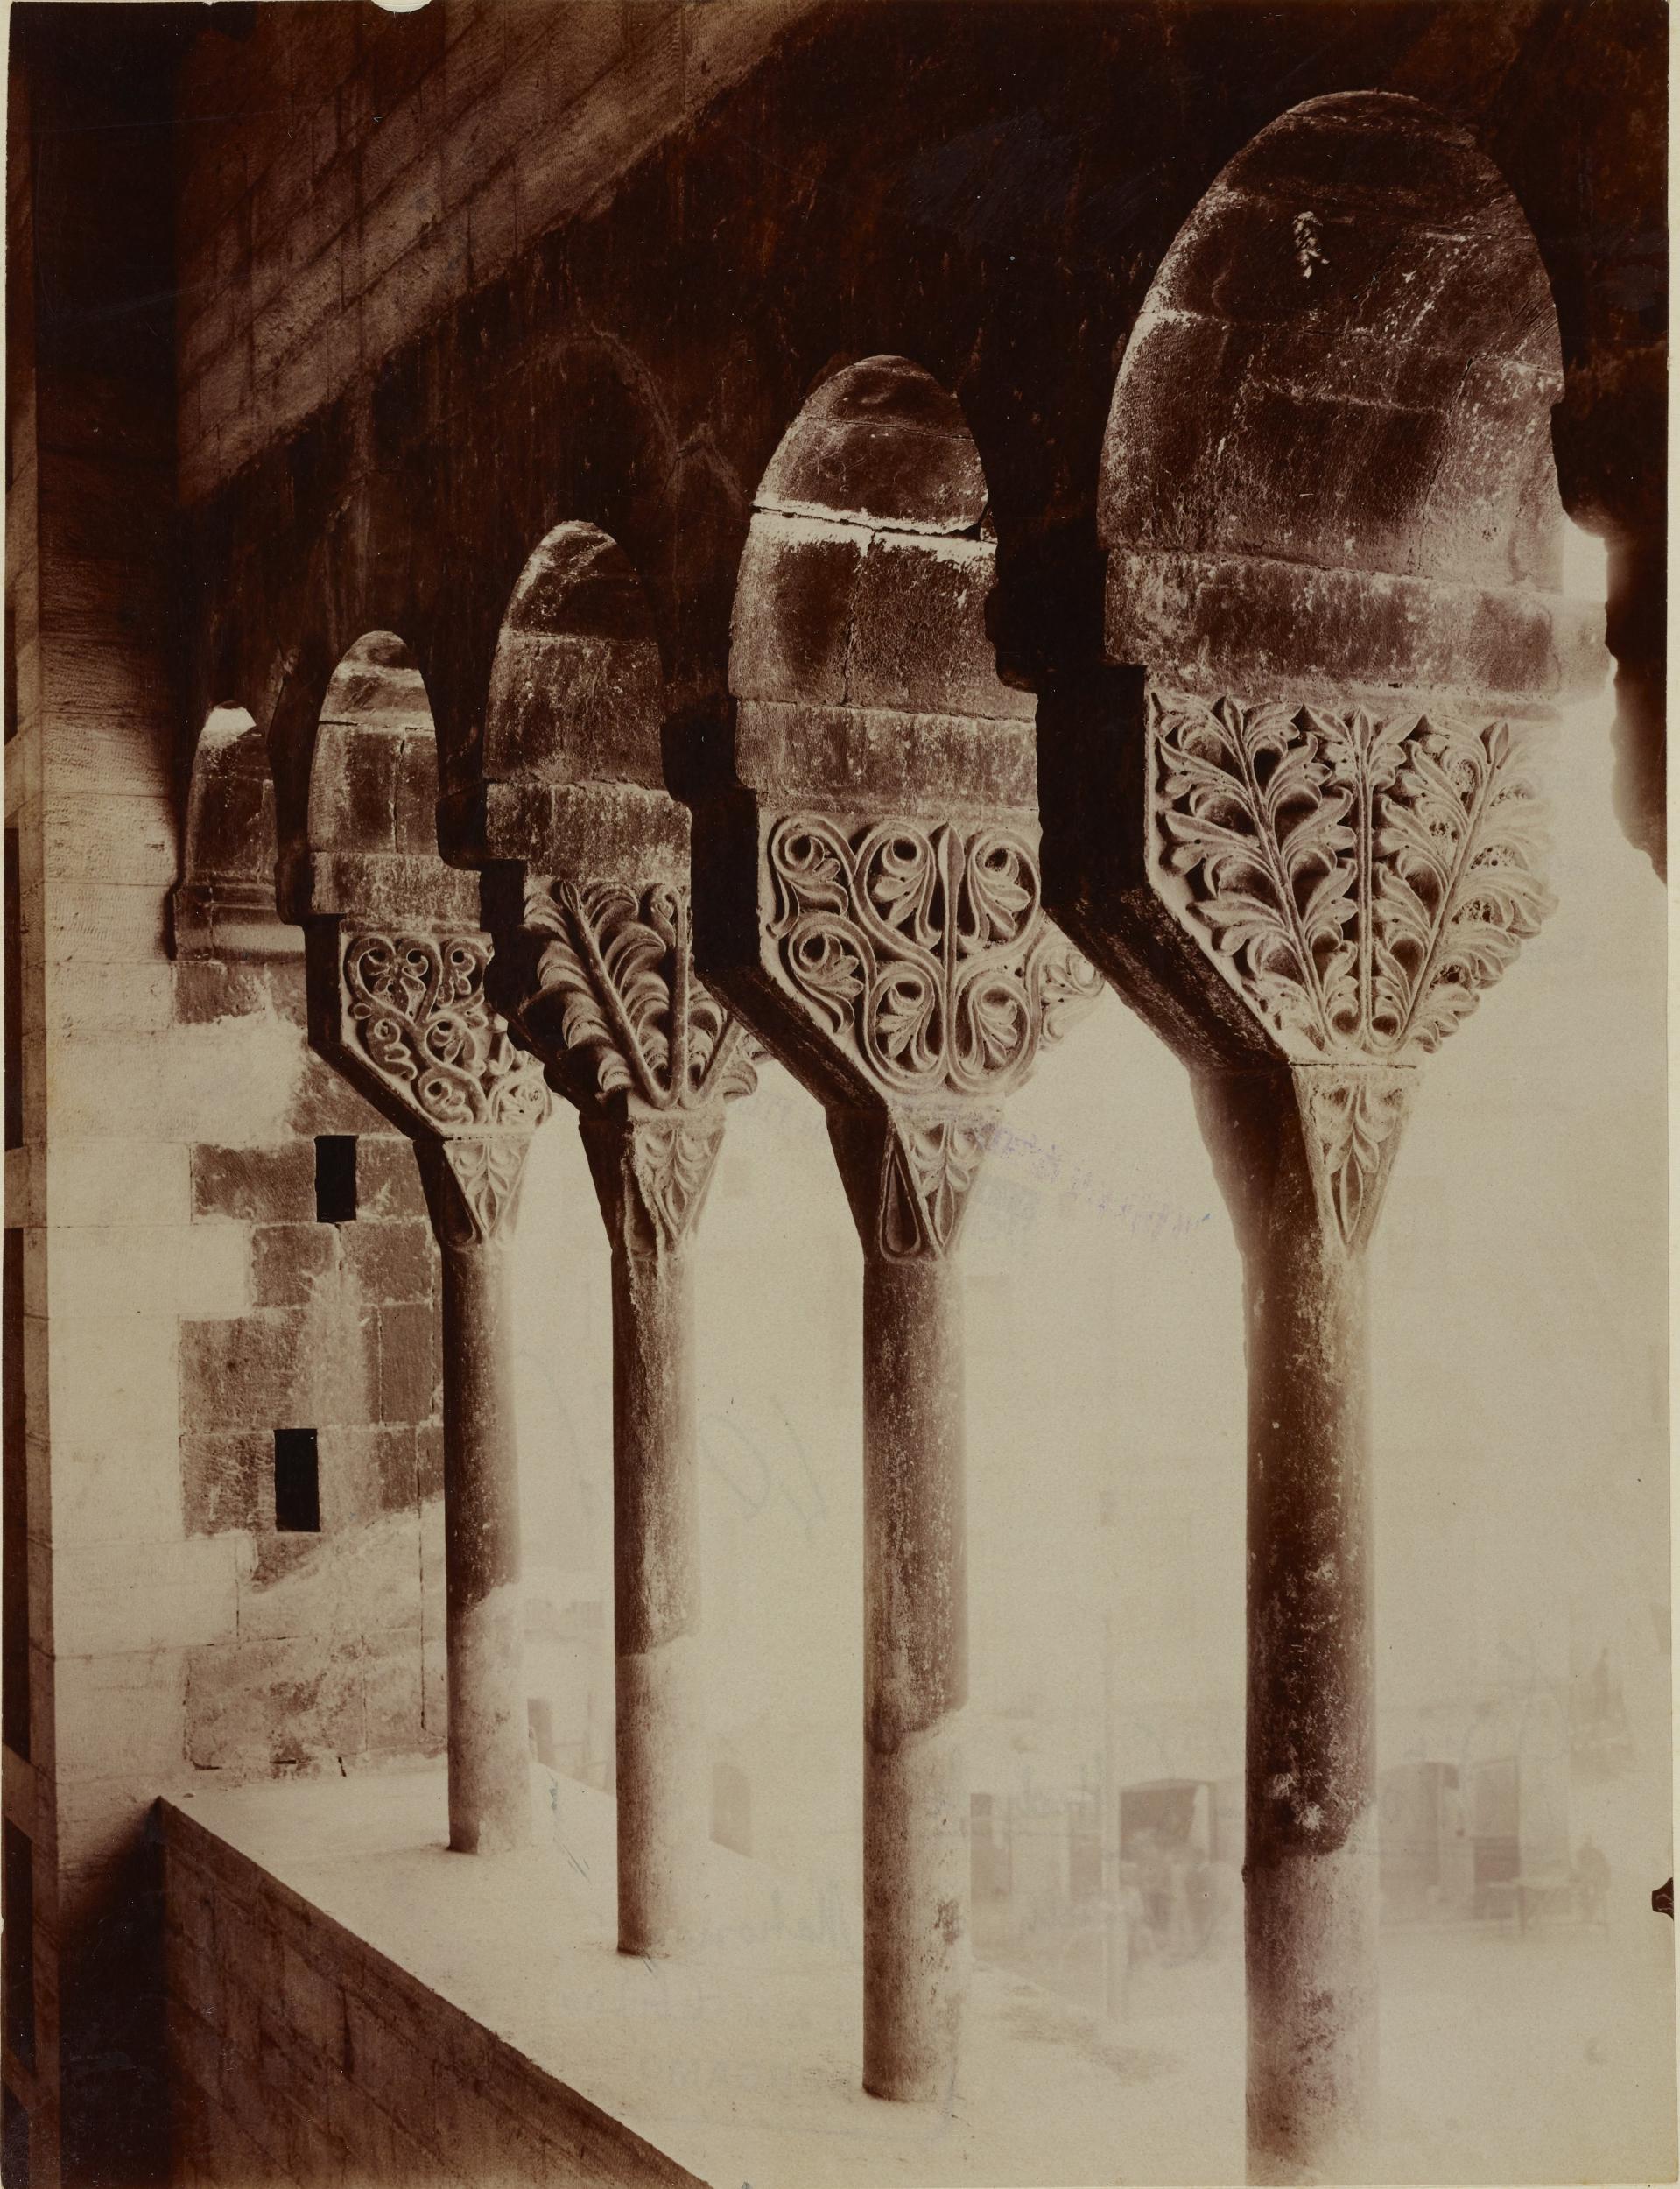 Fotografo non identificato, Bitonto - Cattedrale di S. Valentino, fianco destro esterno, capitelli di una esafora del loggiato, 1876-1900, albumina/carta, MPI137848